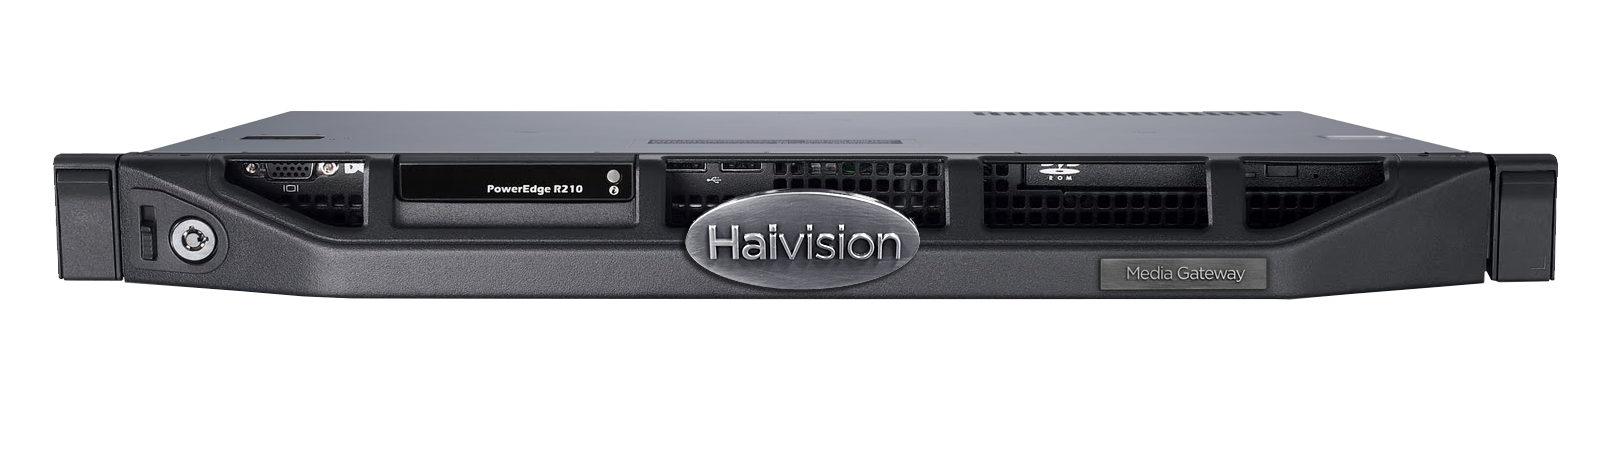 Haivision Media Gateway